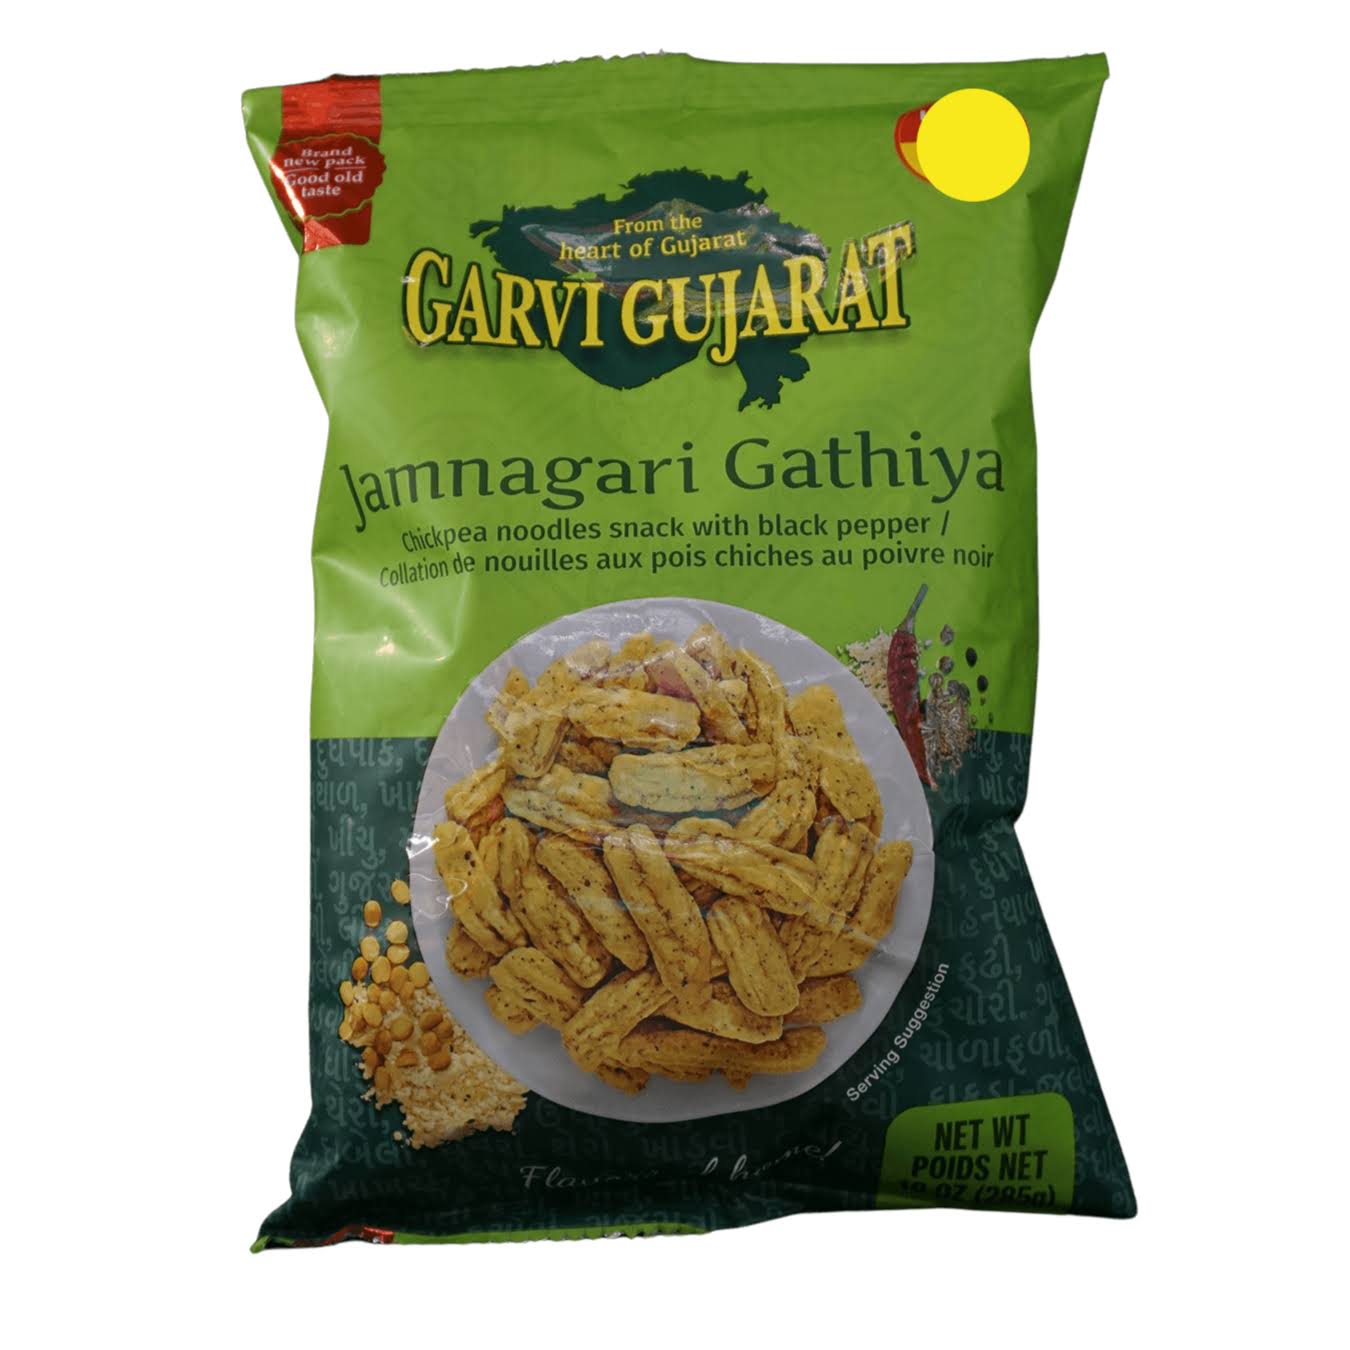 Garvi Gujarat Jamnagari Gathiya - 10 oz (285 gm)